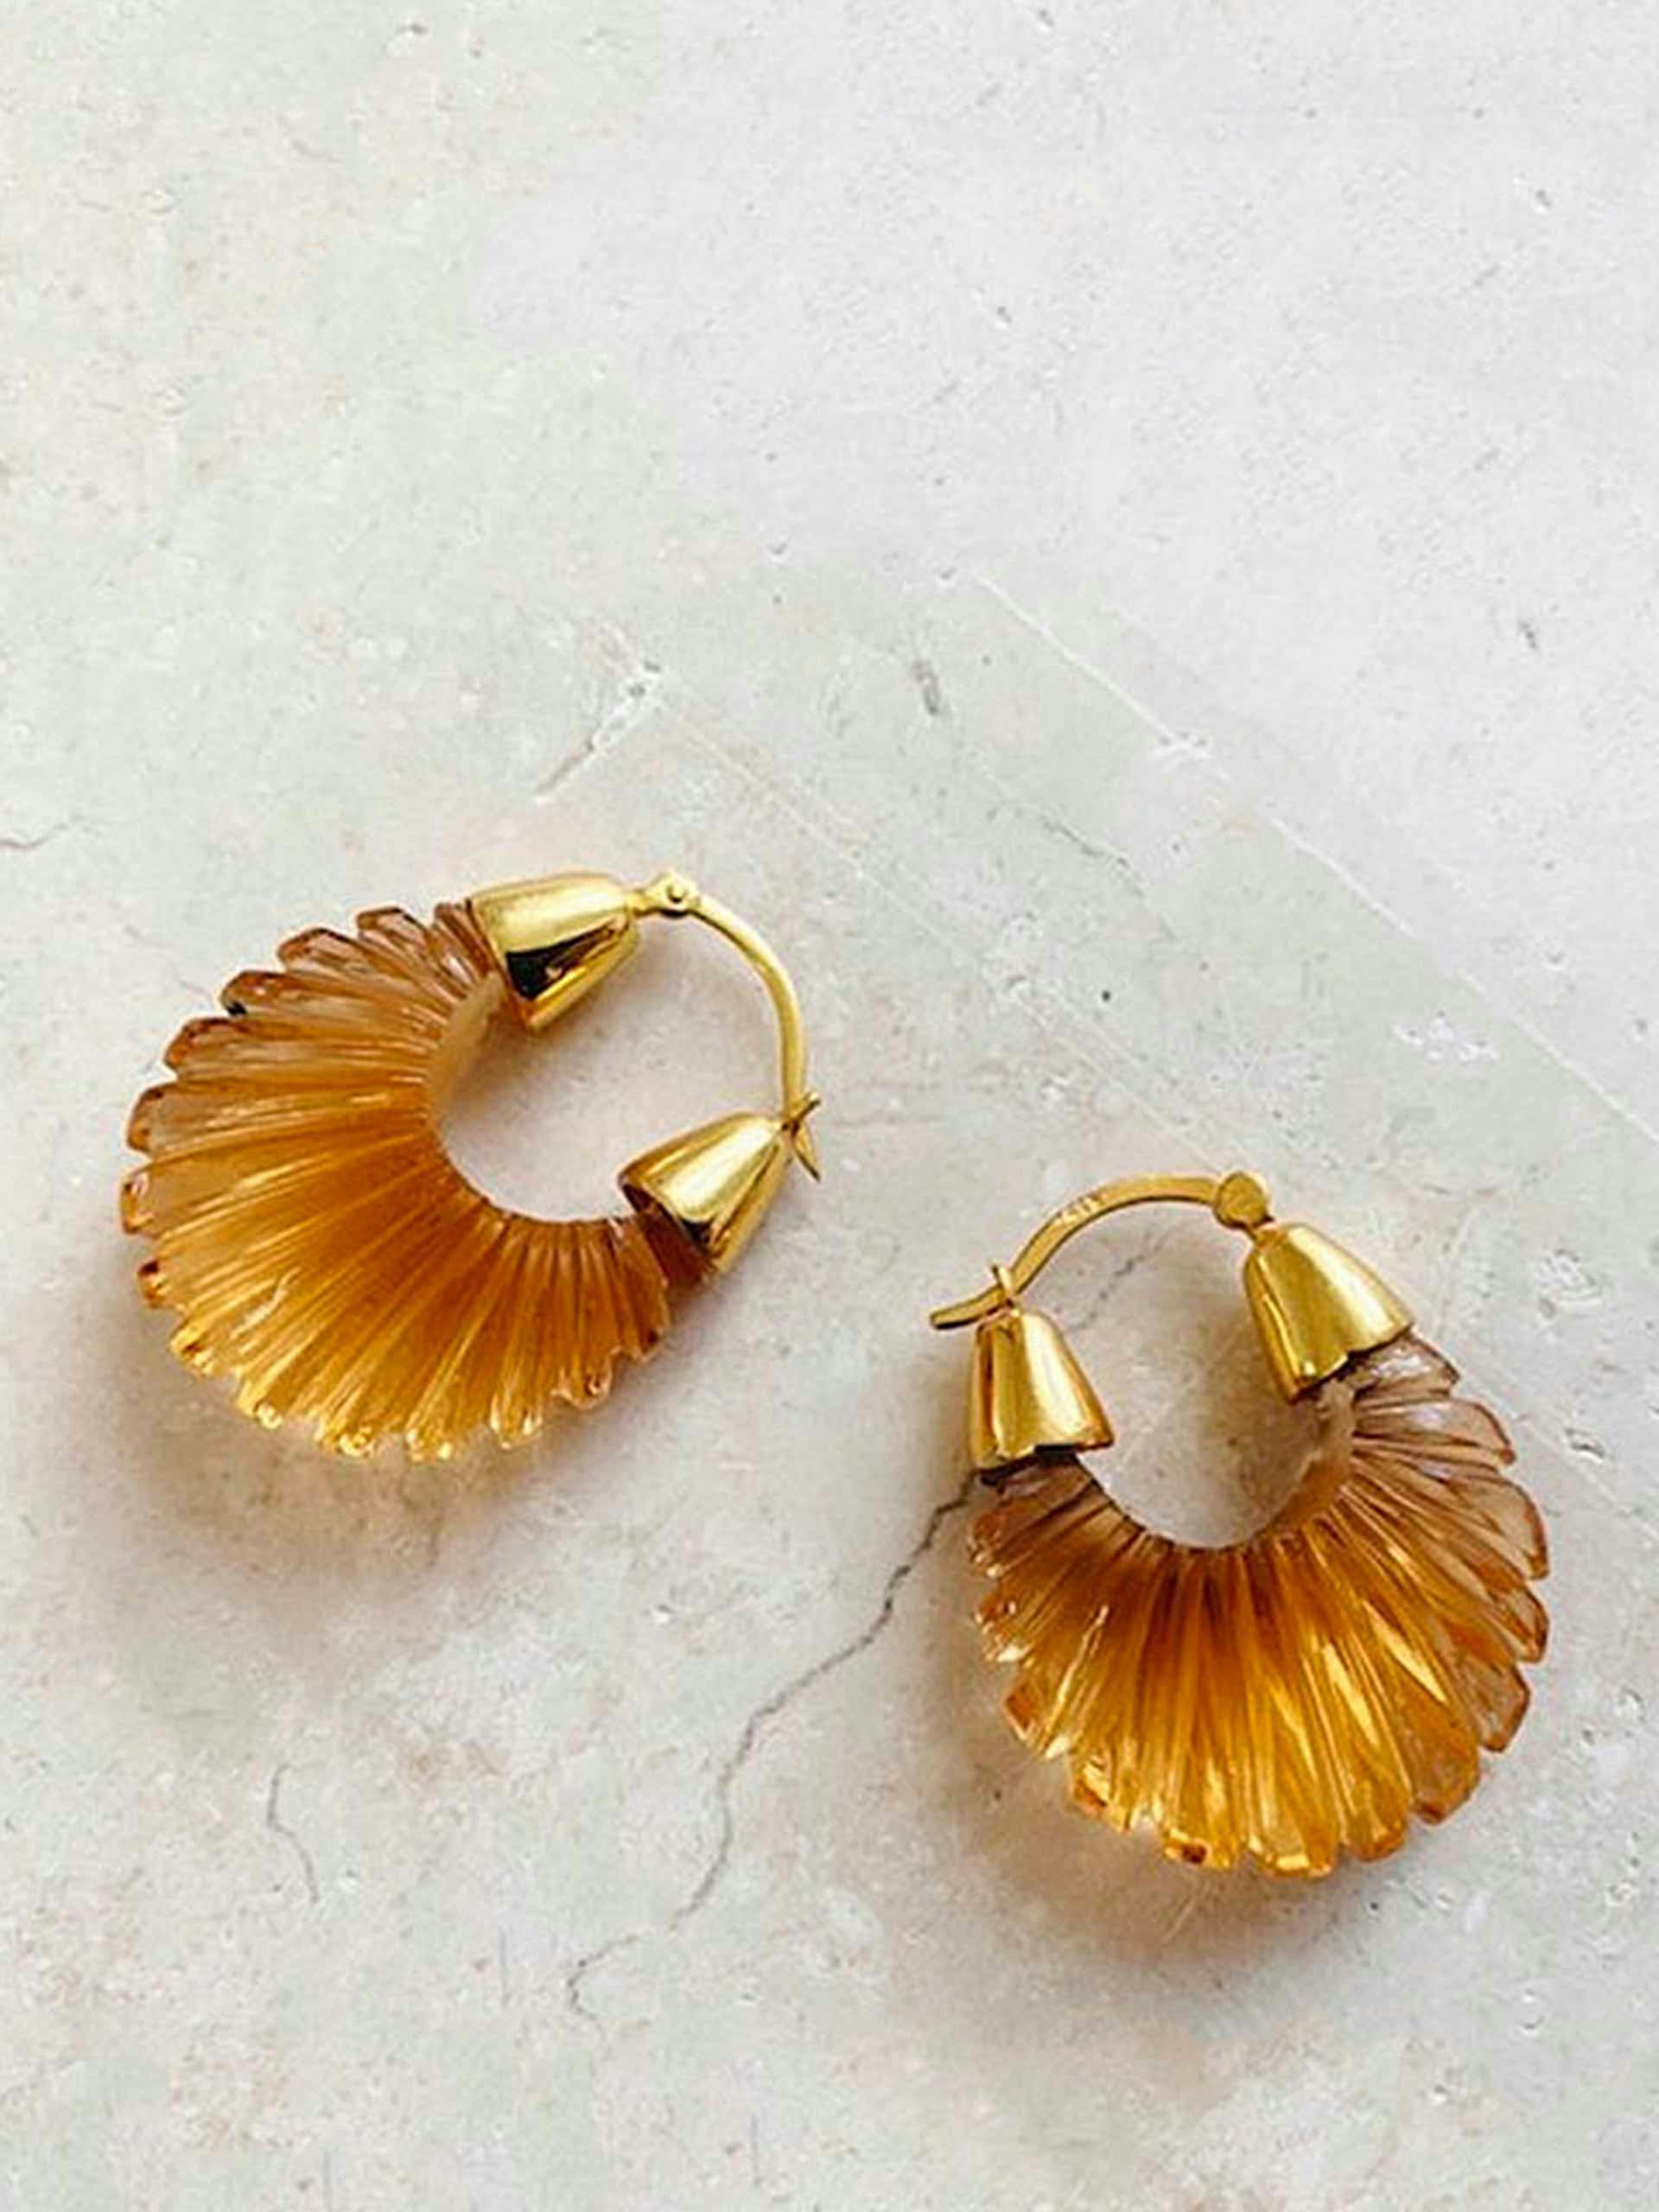 Hydro glass earrings in orange tones